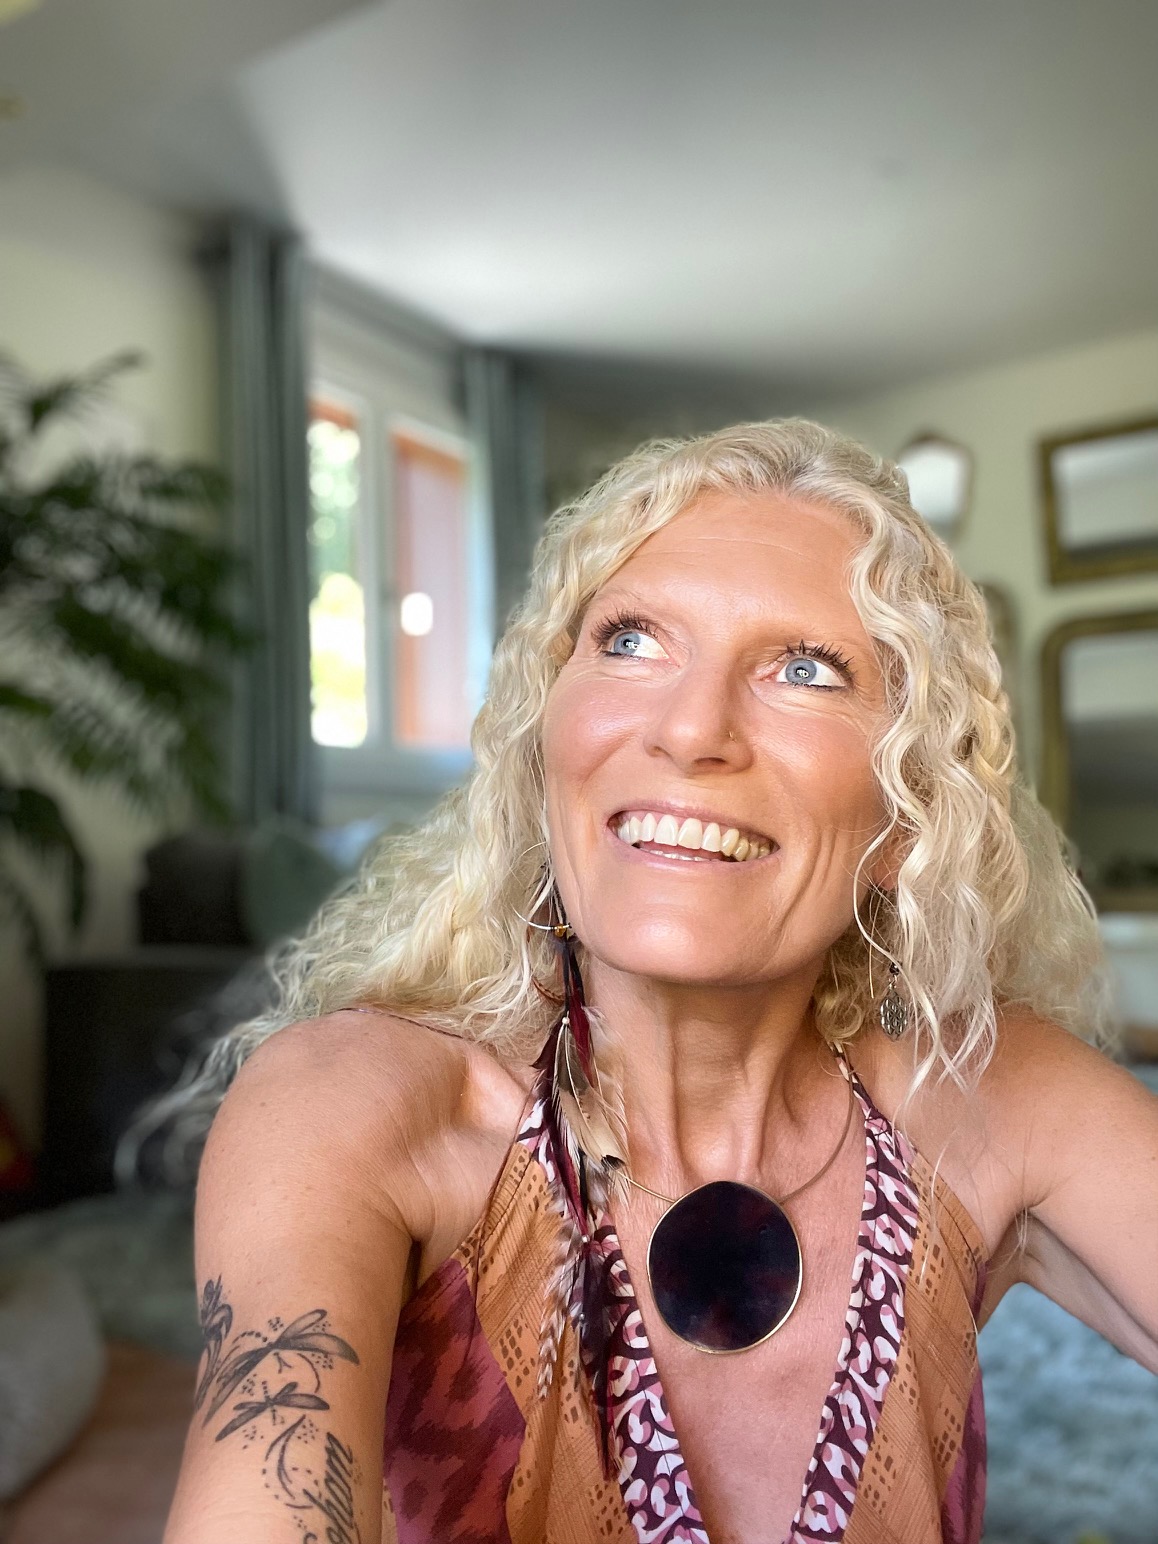 Visage lisse, lumineux et souriant de Charlotte Saint Jean professeur de yoga du visage